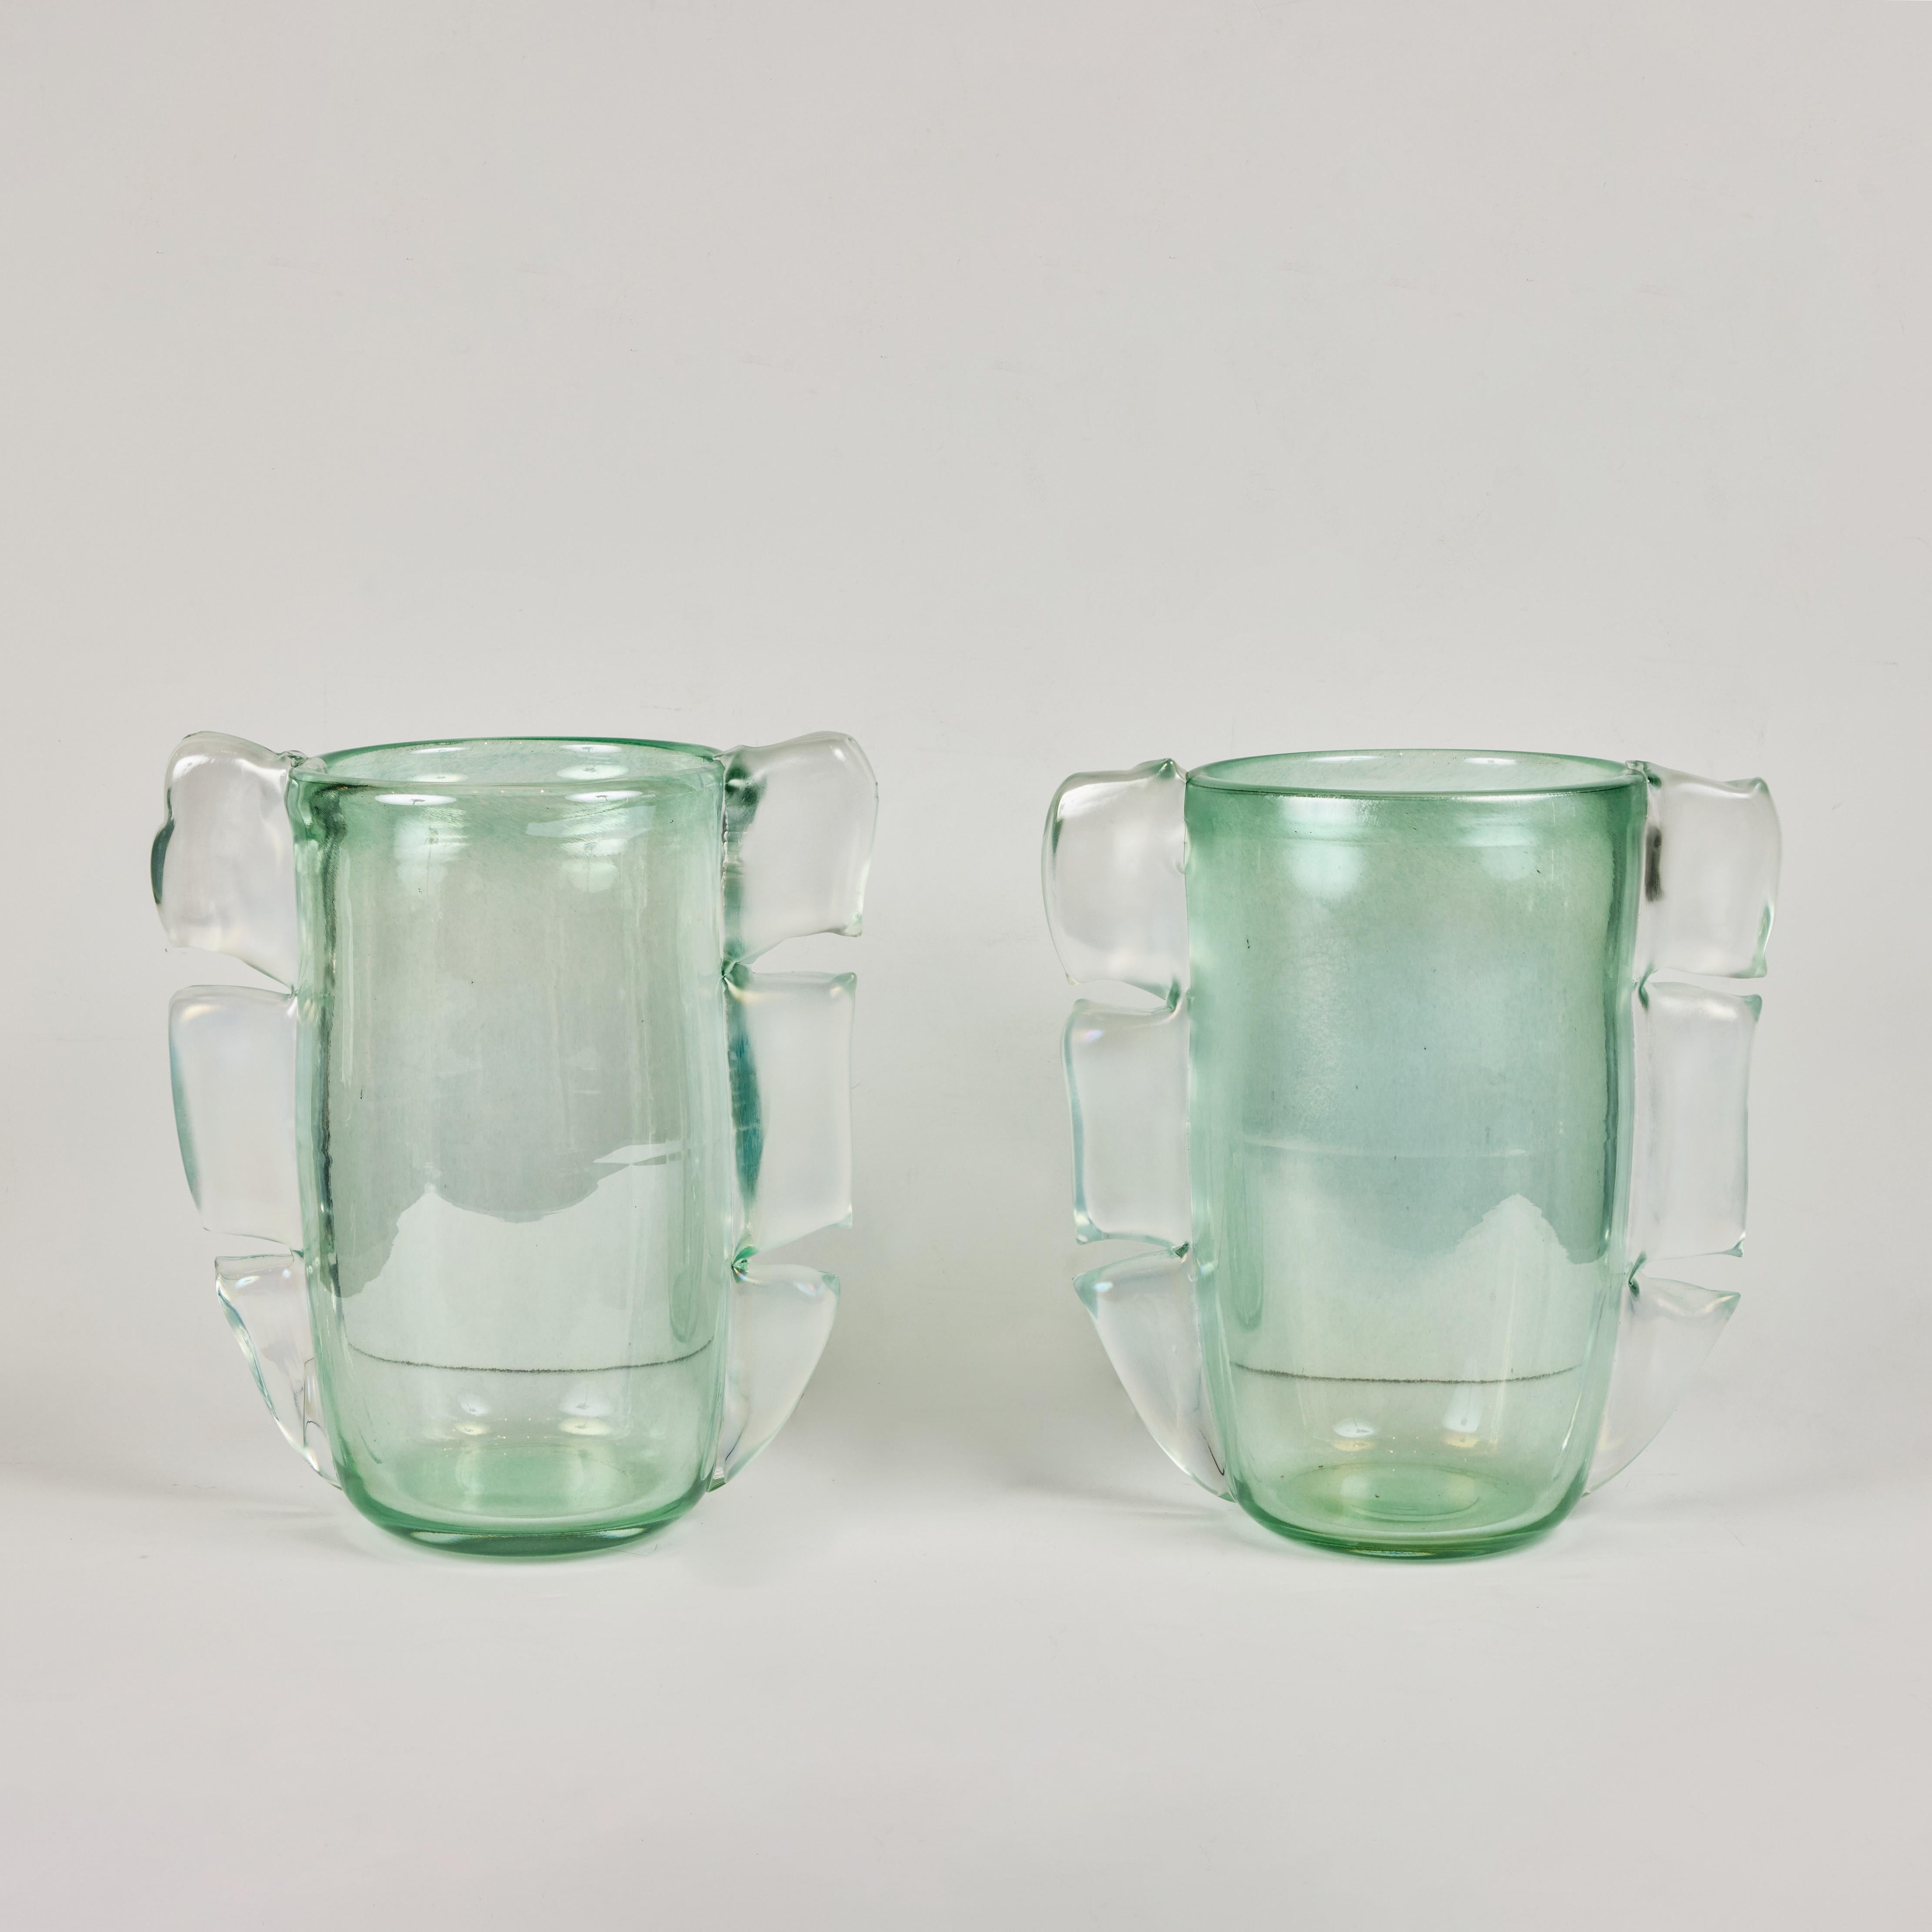 Une paire de mid-century, signé,  Vases en verre vert clair de Murano, avec embellissement en verre opaque.  